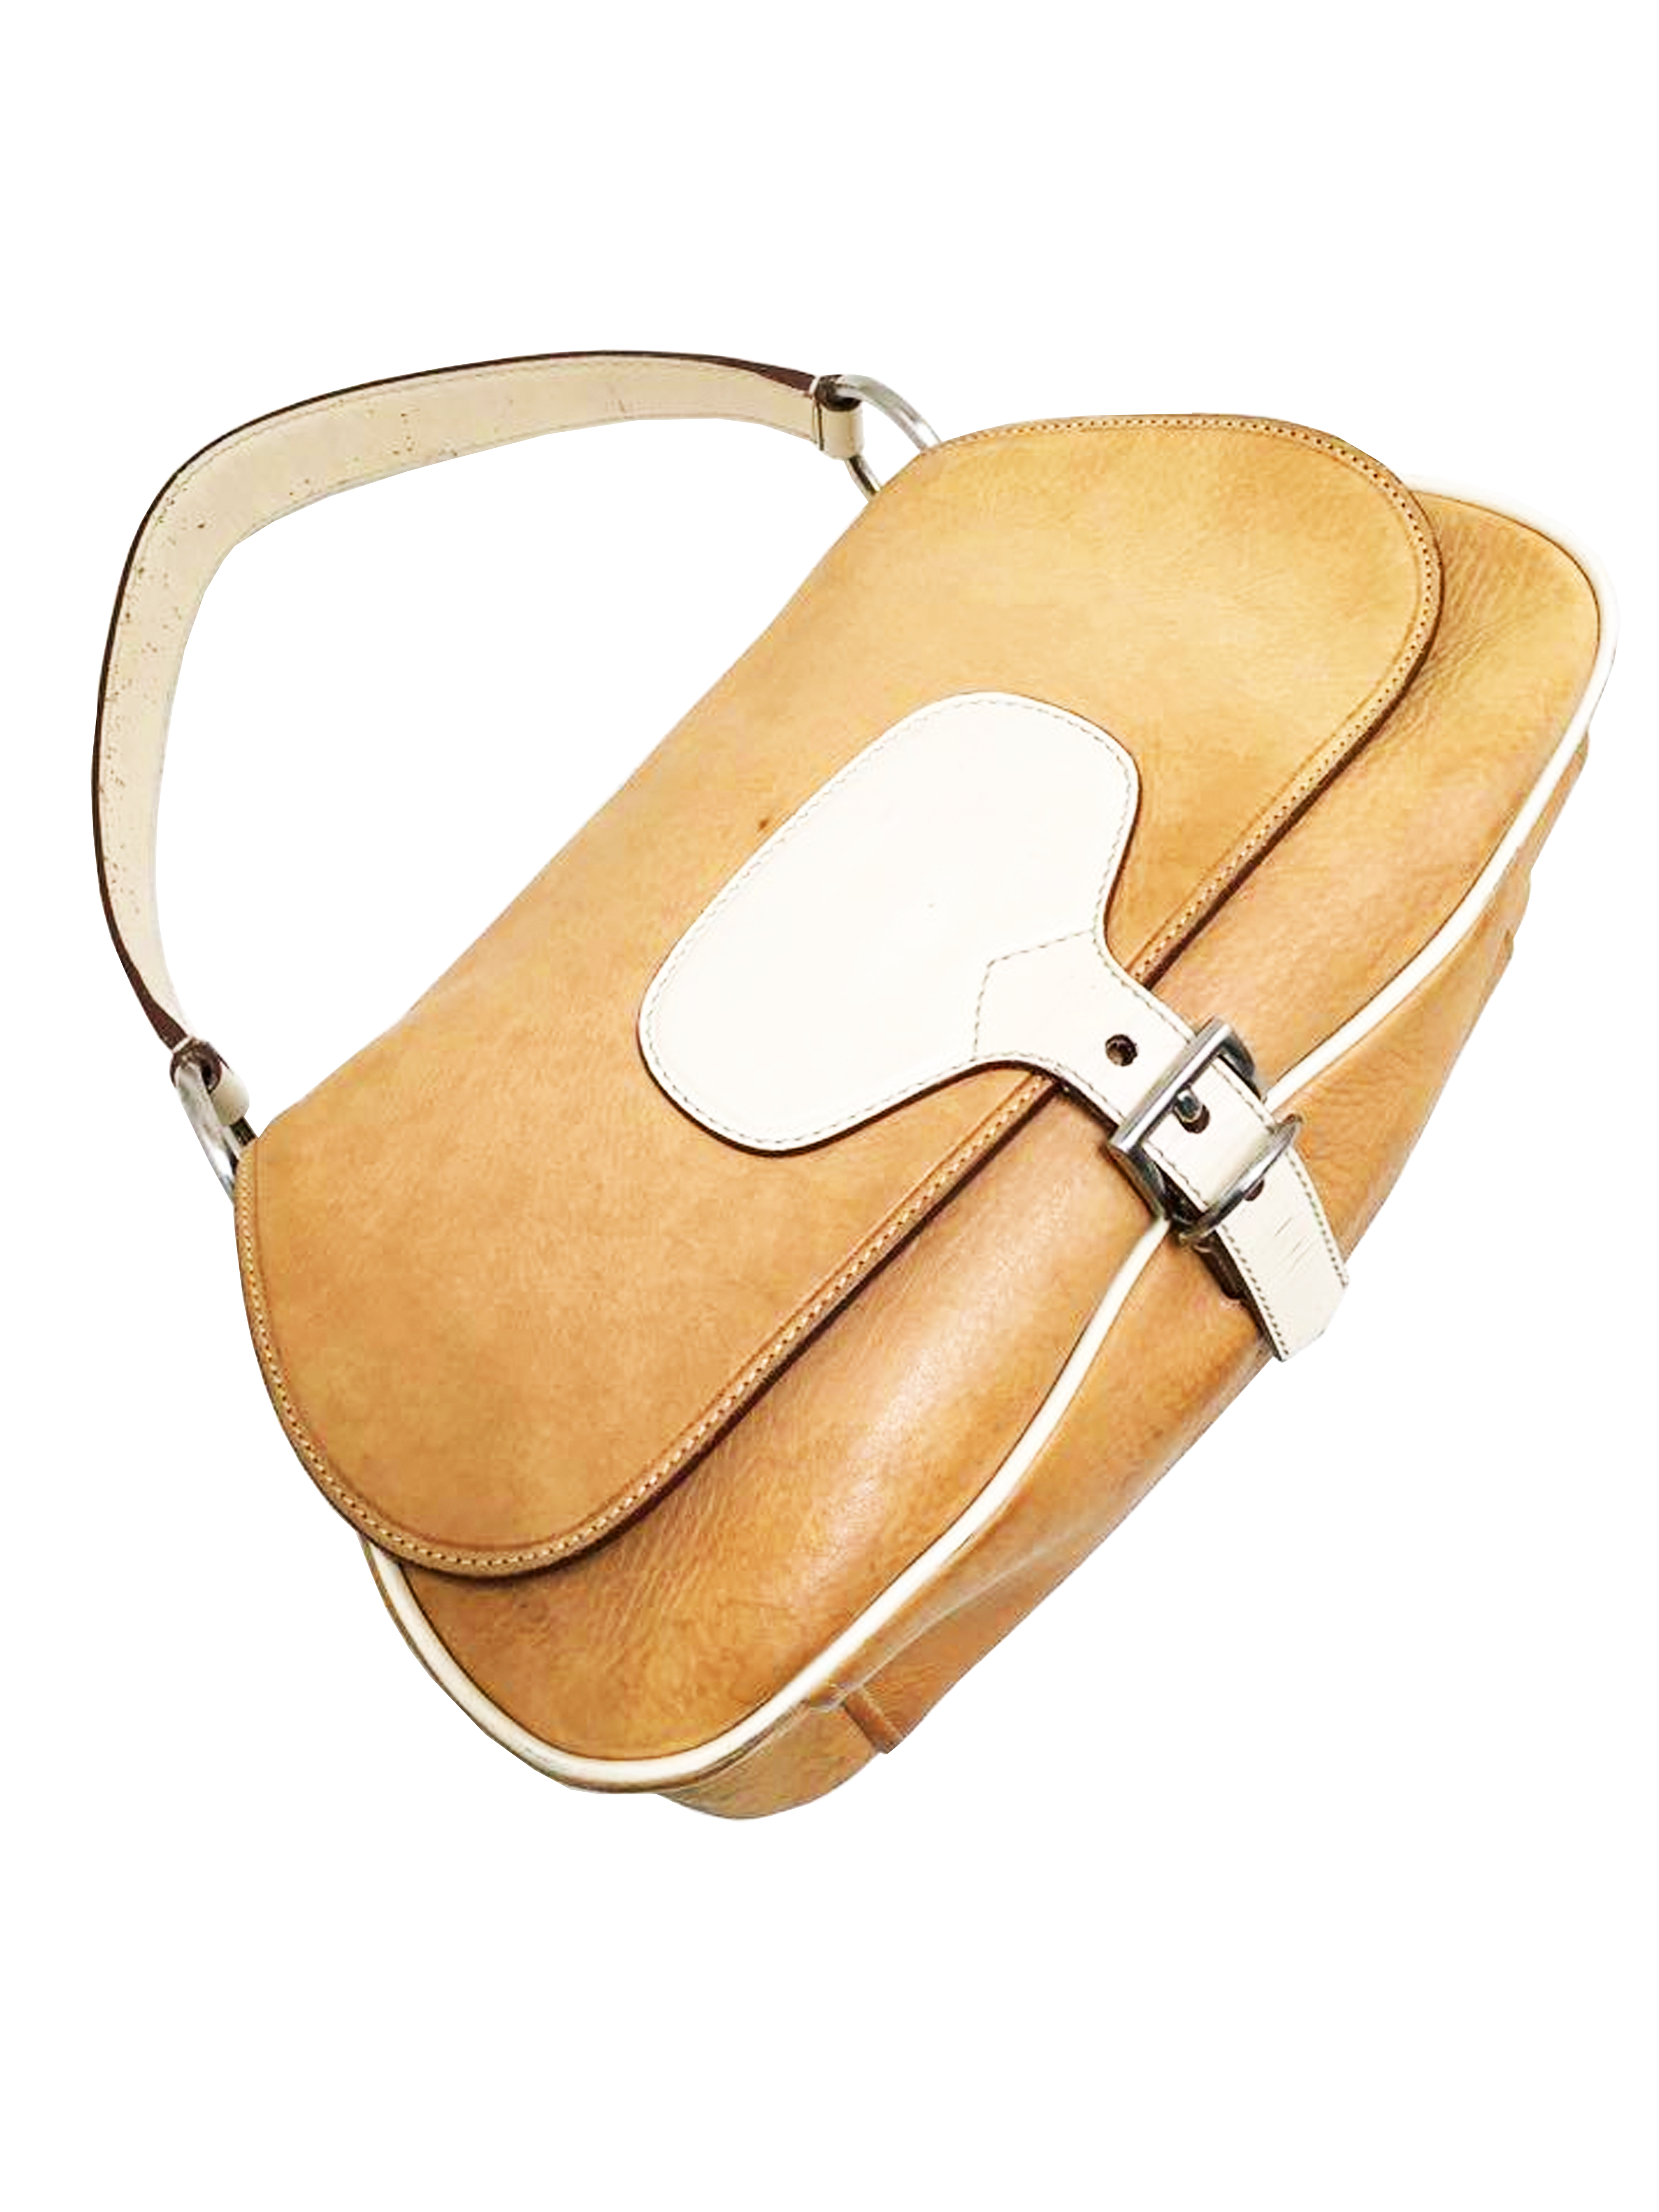 Prada 2000s Brown Jacquard One Shoulder Bag · INTO